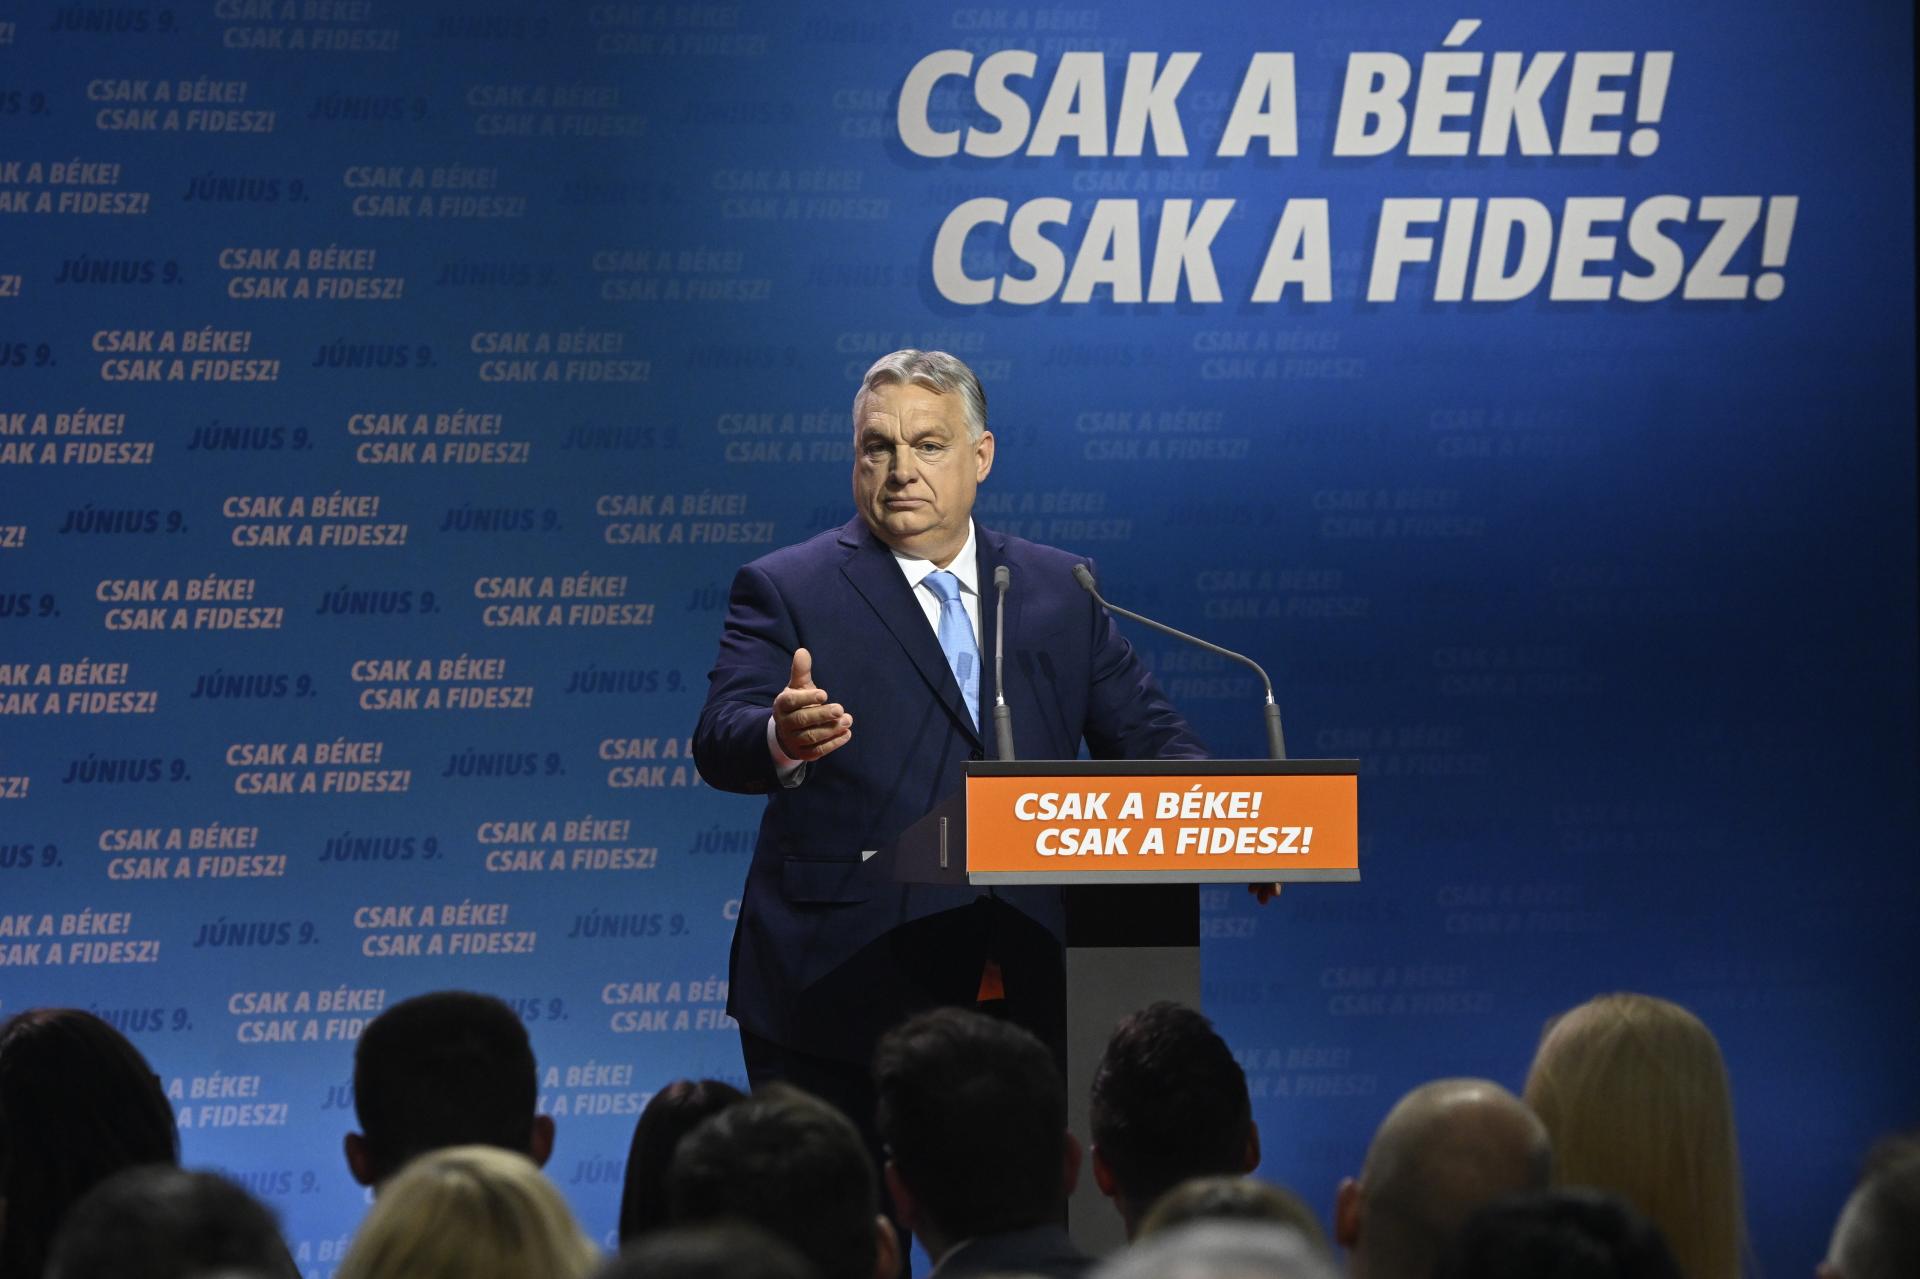 Medzi Fideszom a KDNP je rozkol kvôli členstvu v európskych ľudovcov